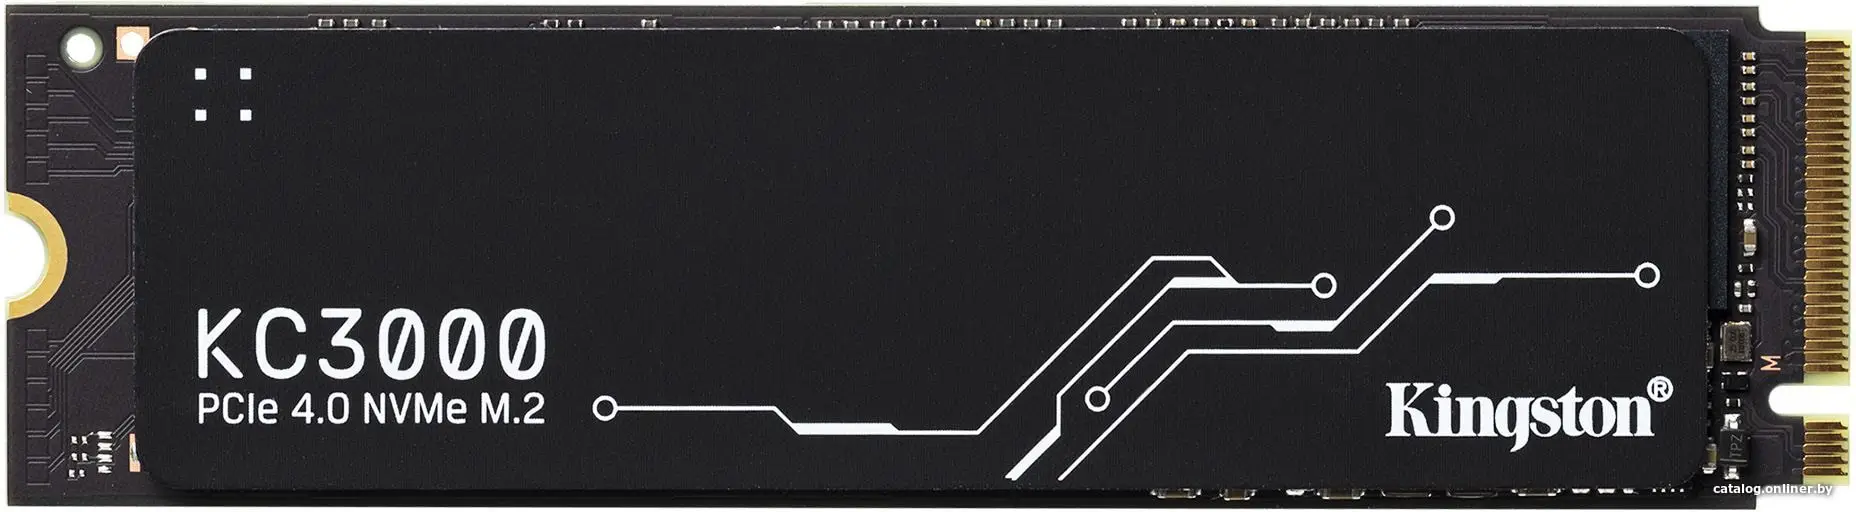 Купить Накопитель SSD Kingston PCI-E 4.0 x4 1Tb SKC3000S/1024G KC3000 M.2 2280, цена, опт и розница